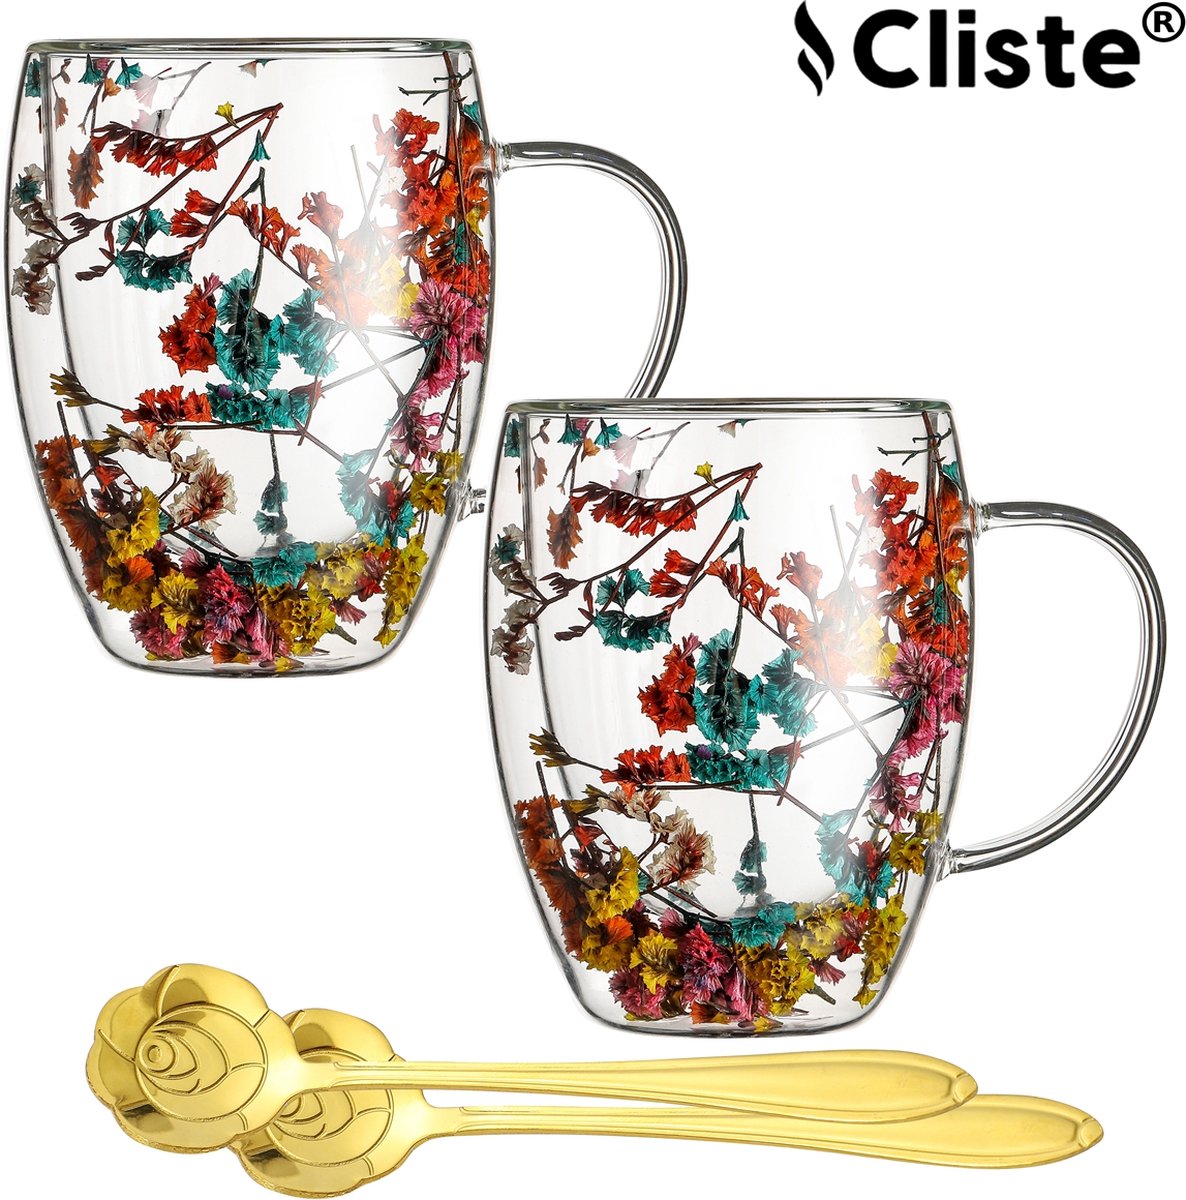 tasse en verre coloré tasse en verre avec motif de fleur lunettes